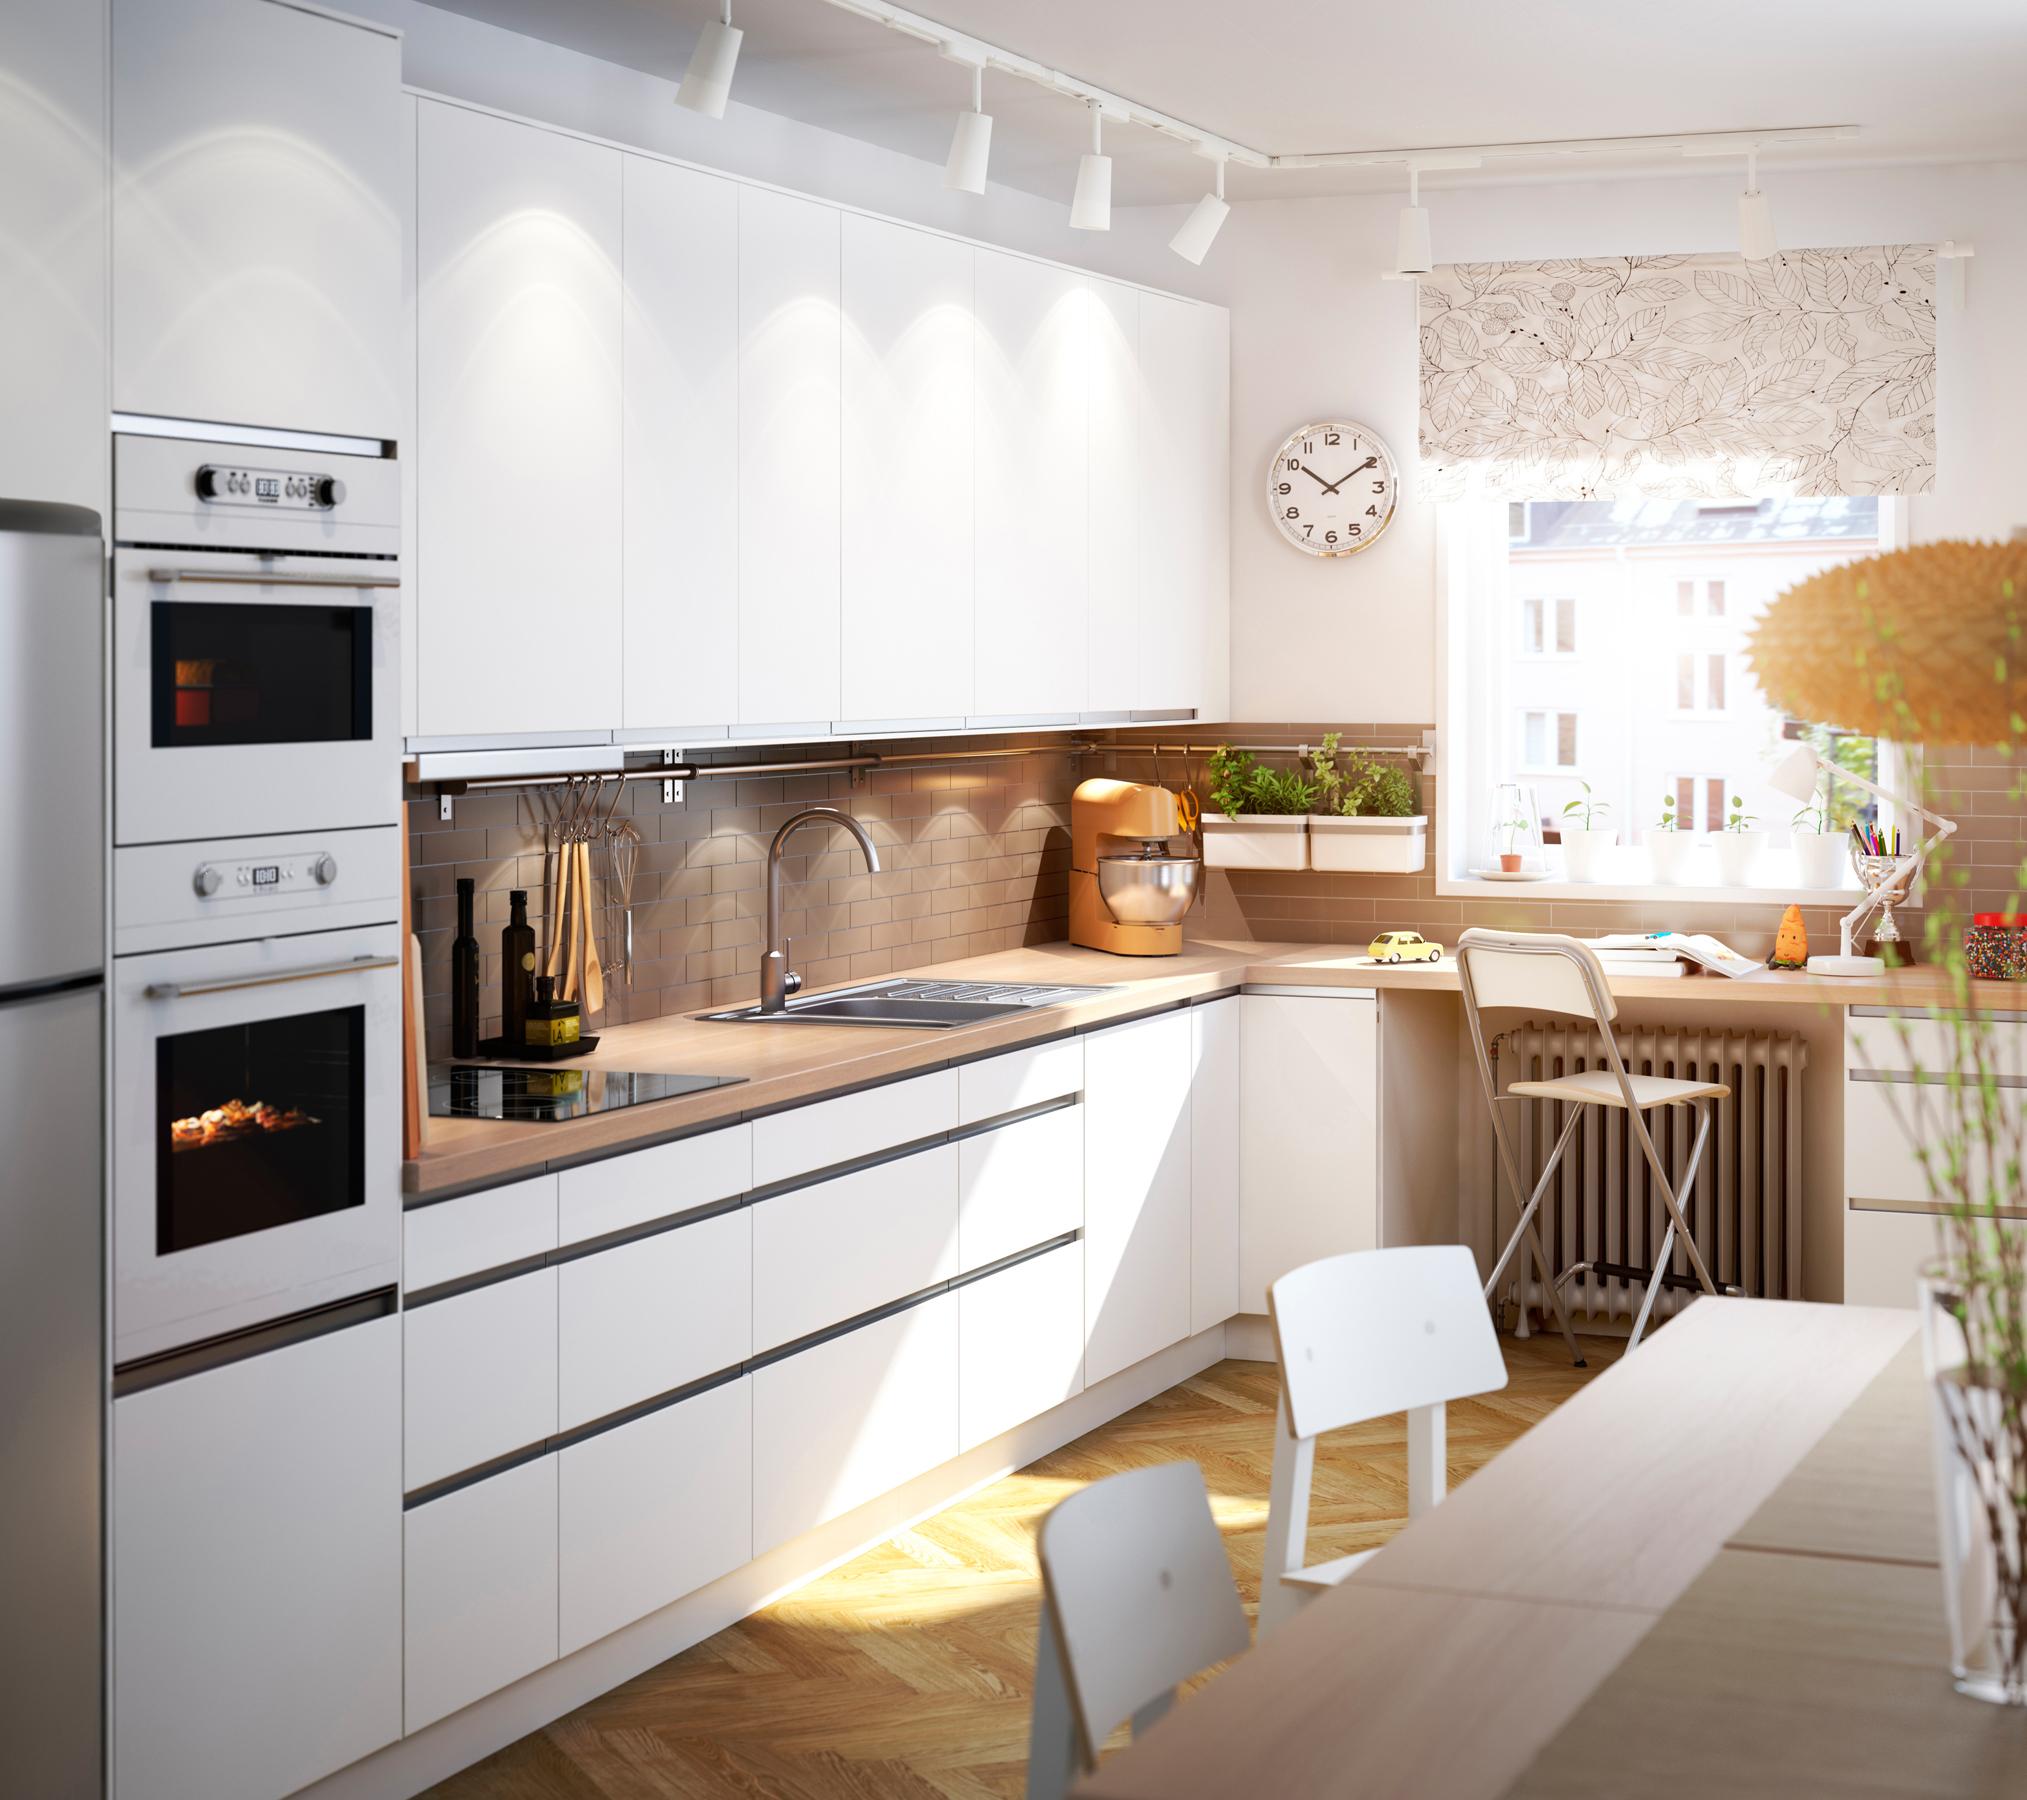 Weiße Einbauküche und Essbereich im natürlichen Look #ikea #holzstuhl #weißeküche #weißerküchenschrank ©Inter IKEA Systems B.V